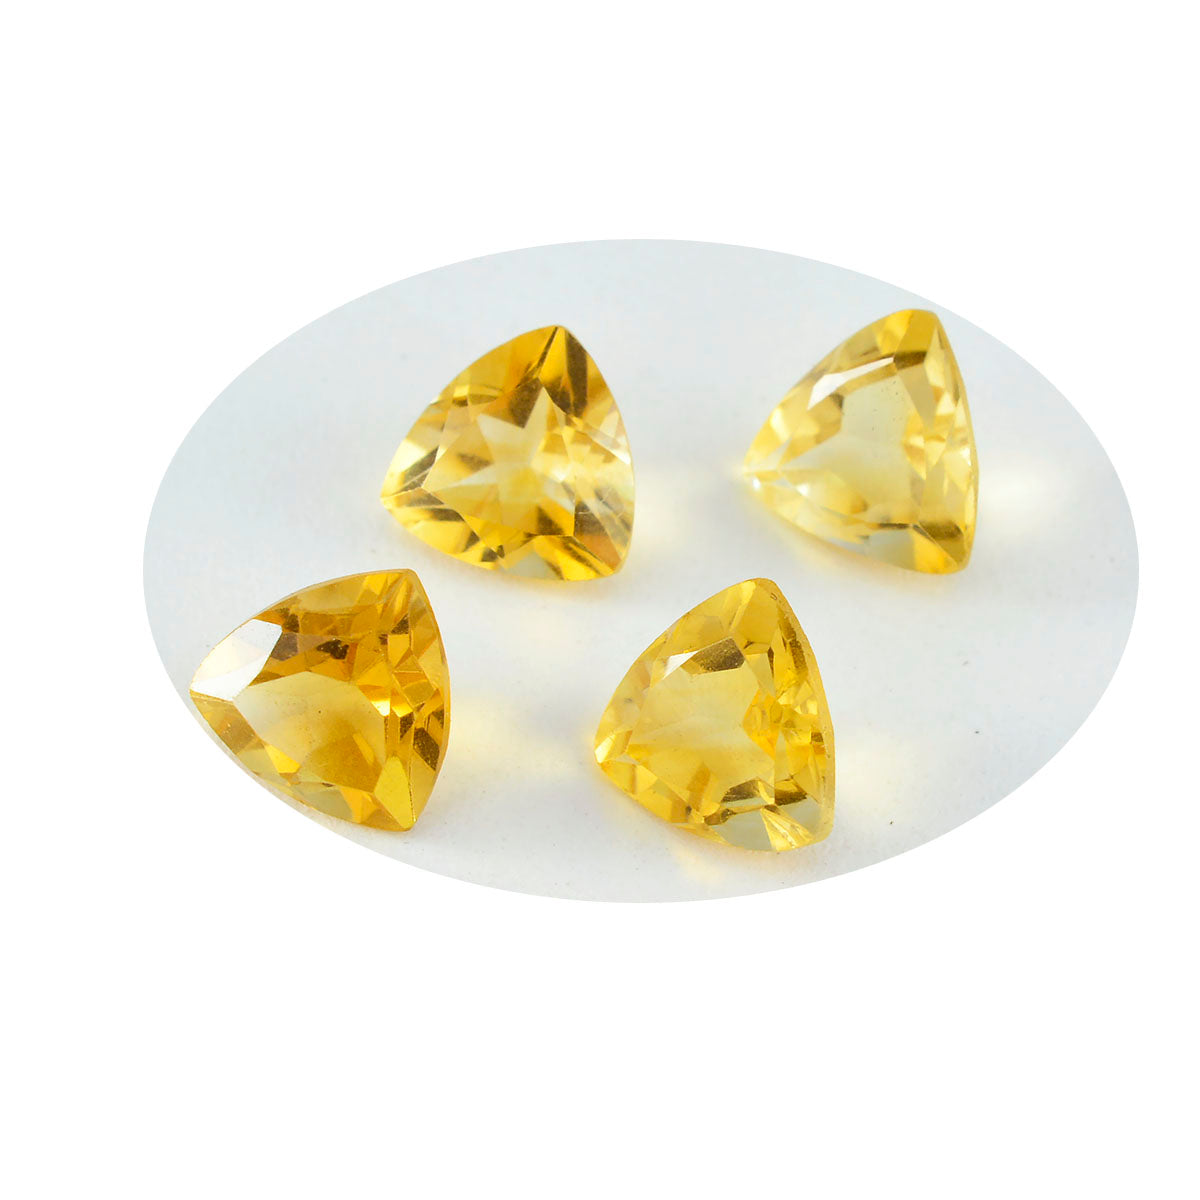 riyogems 1 шт. натуральный желтый цитрин ограненный 7x7 мм форма триллиона красивый качественный свободный драгоценный камень